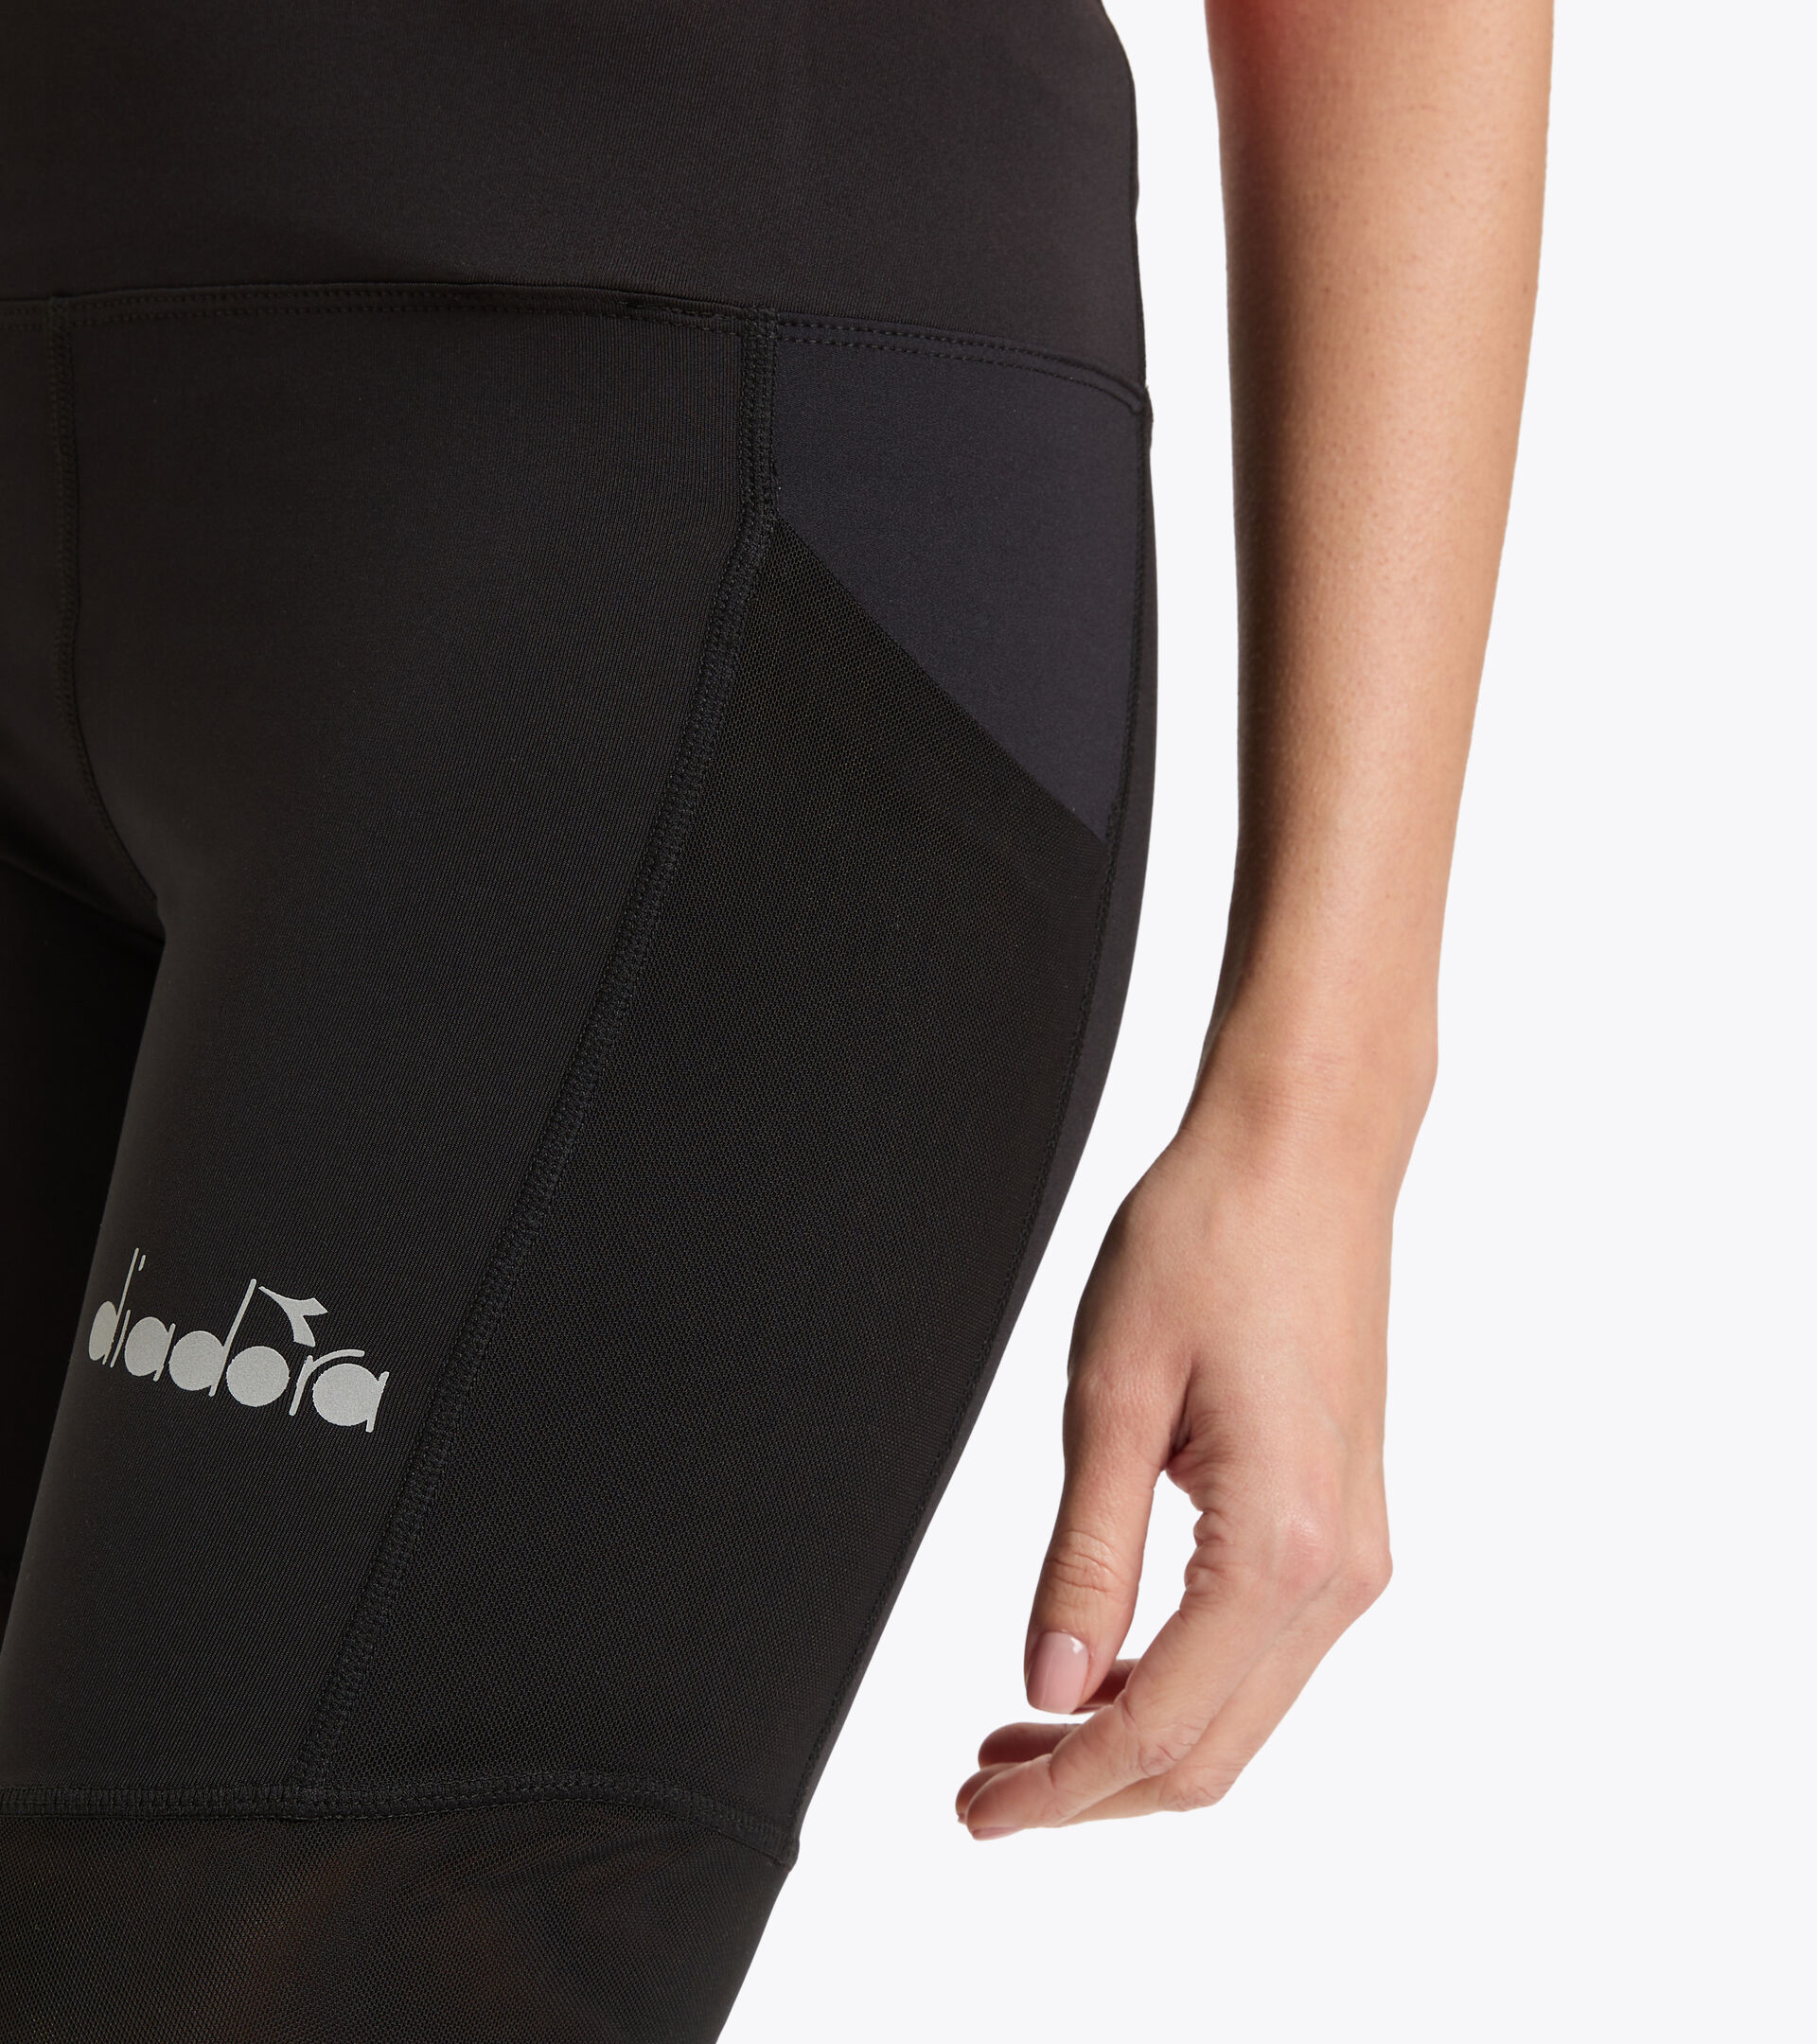 Sports shorts - Women L. BIKE SHORTS BE ONE W BLACK - Diadora